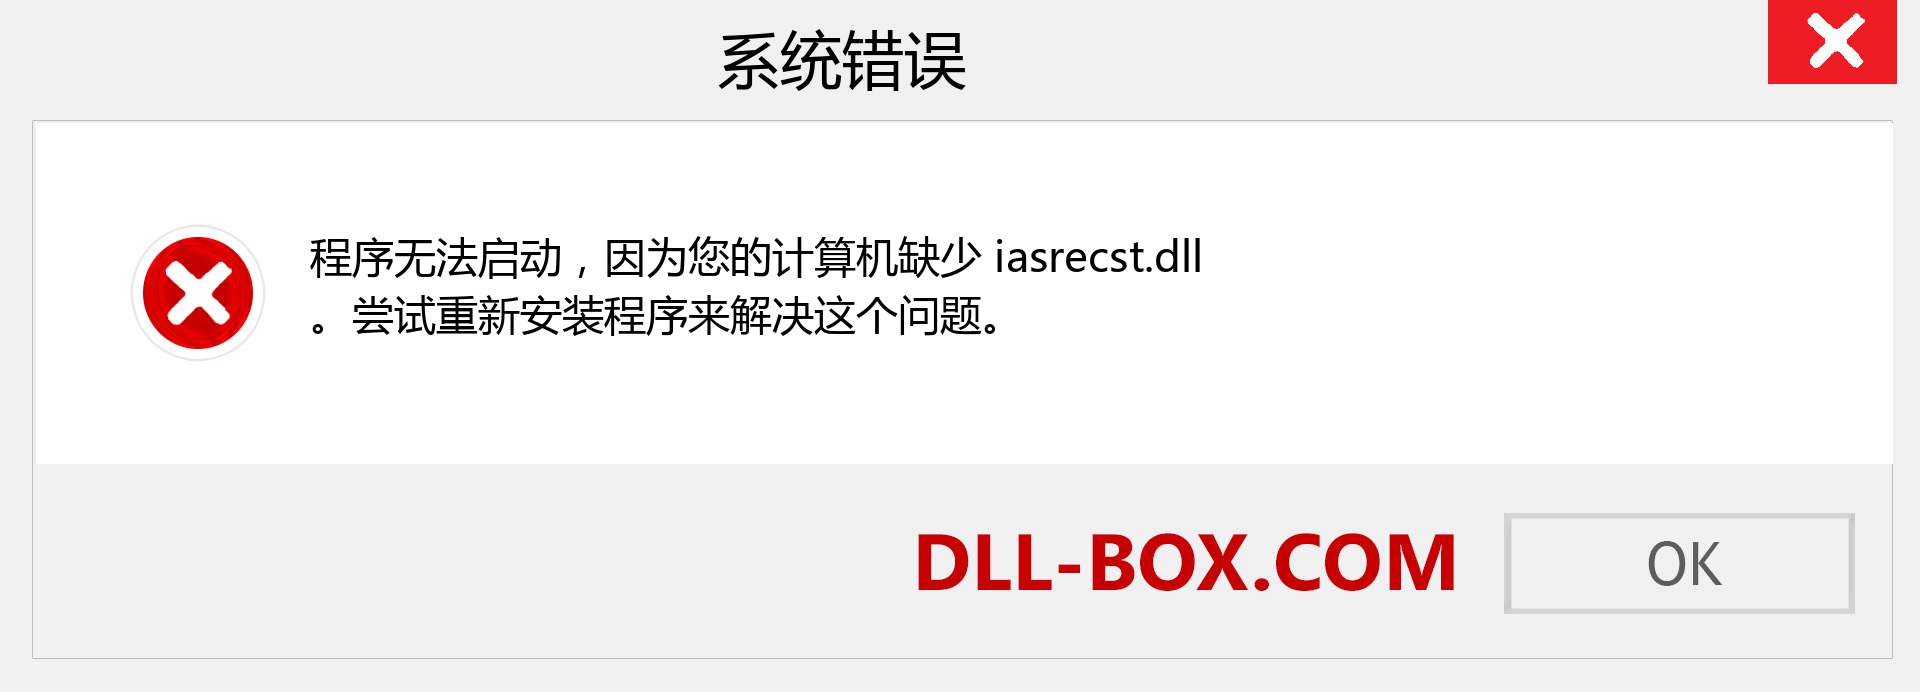 iasrecst.dll 文件丢失？。 适用于 Windows 7、8、10 的下载 - 修复 Windows、照片、图像上的 iasrecst dll 丢失错误